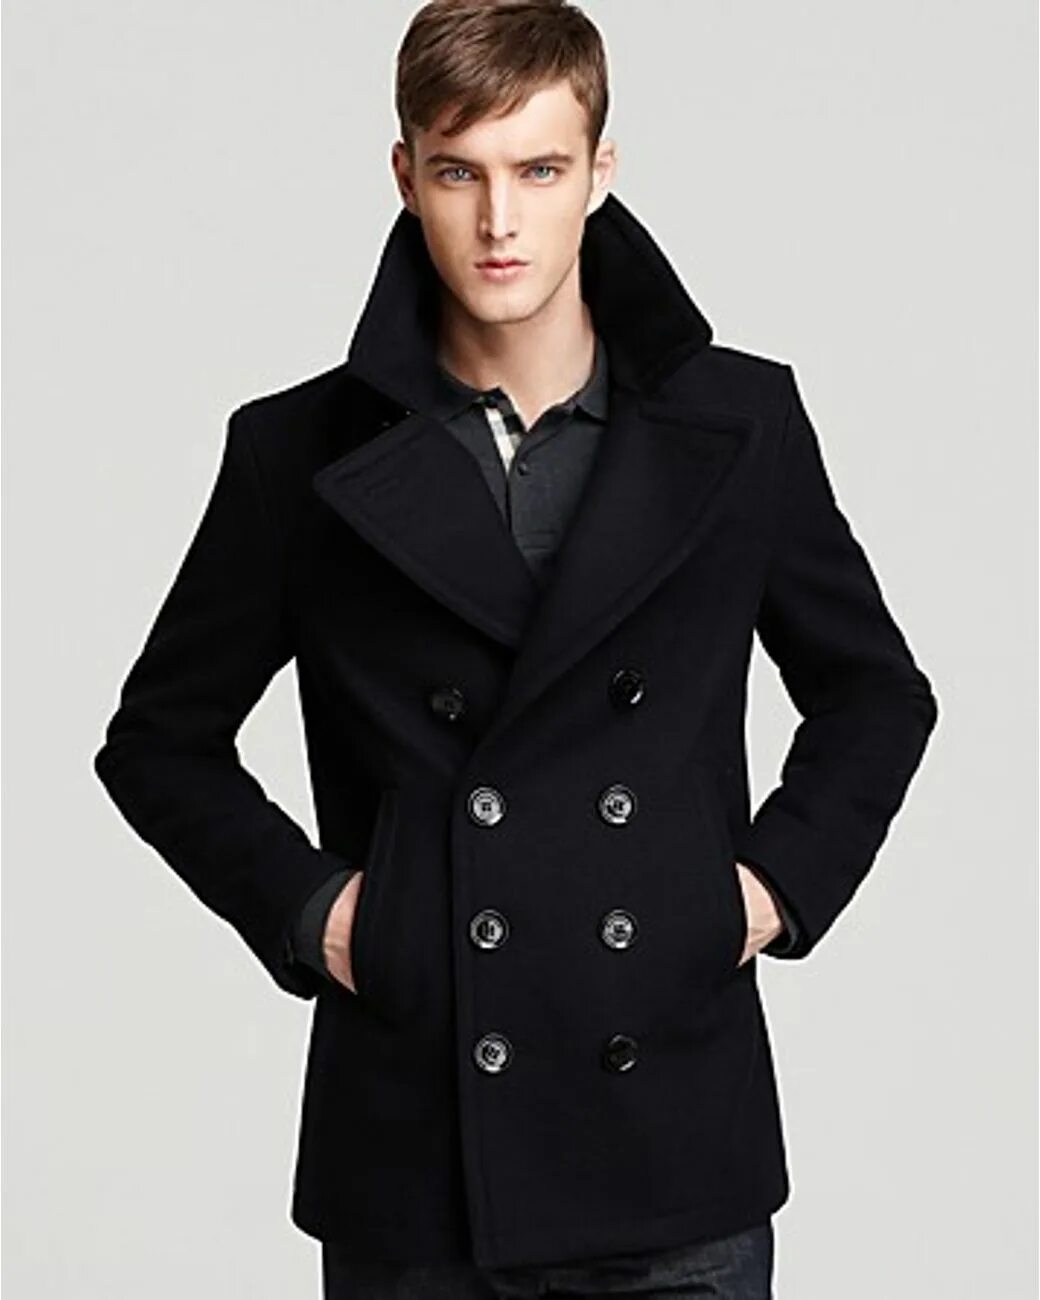 Купить пальто мужское магазин. Пальто Барбери черное мужское. Burberry Peacoat man. Burberry Brit Peacoat. Burberry Brit пальто мужское.